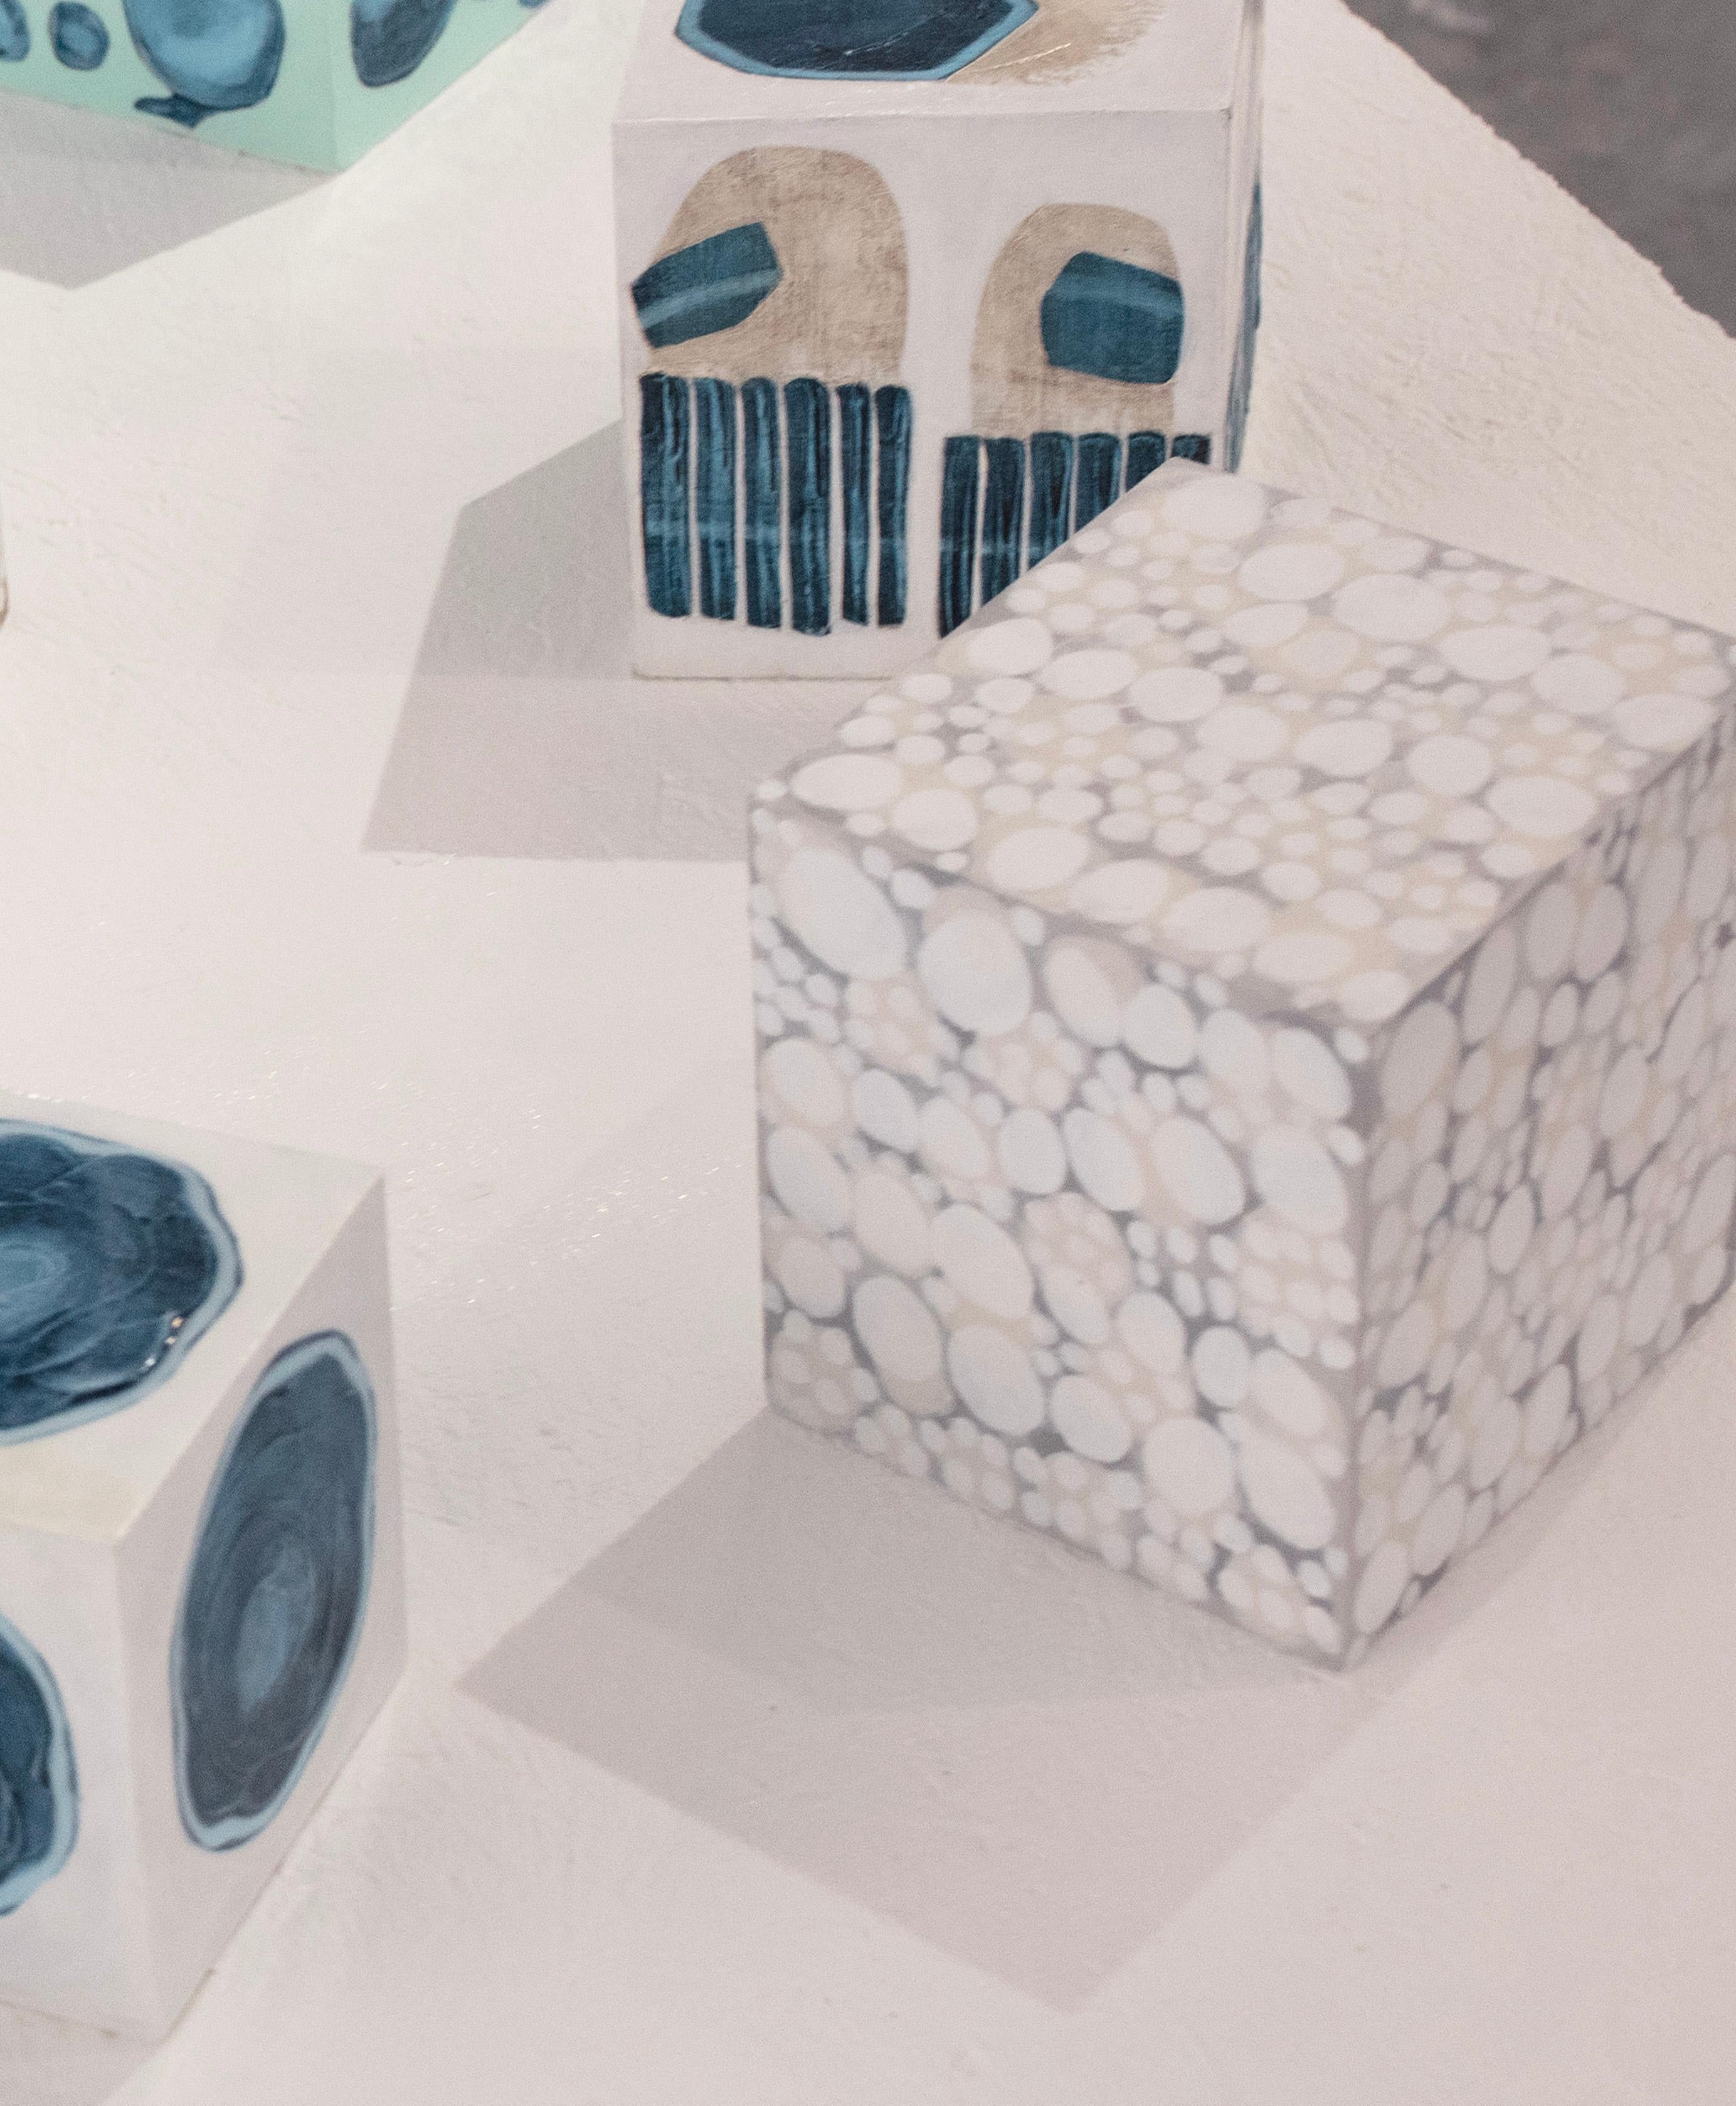 Ce cube sculptural de 5 pouces peint à la main par Sofie Swann est réalisé avec de la peinture acrylique et du gesso sur bois. Whiting présente une palette de gris, de blanc et de beige avec des formes circulaires blanches imparfaites disposées